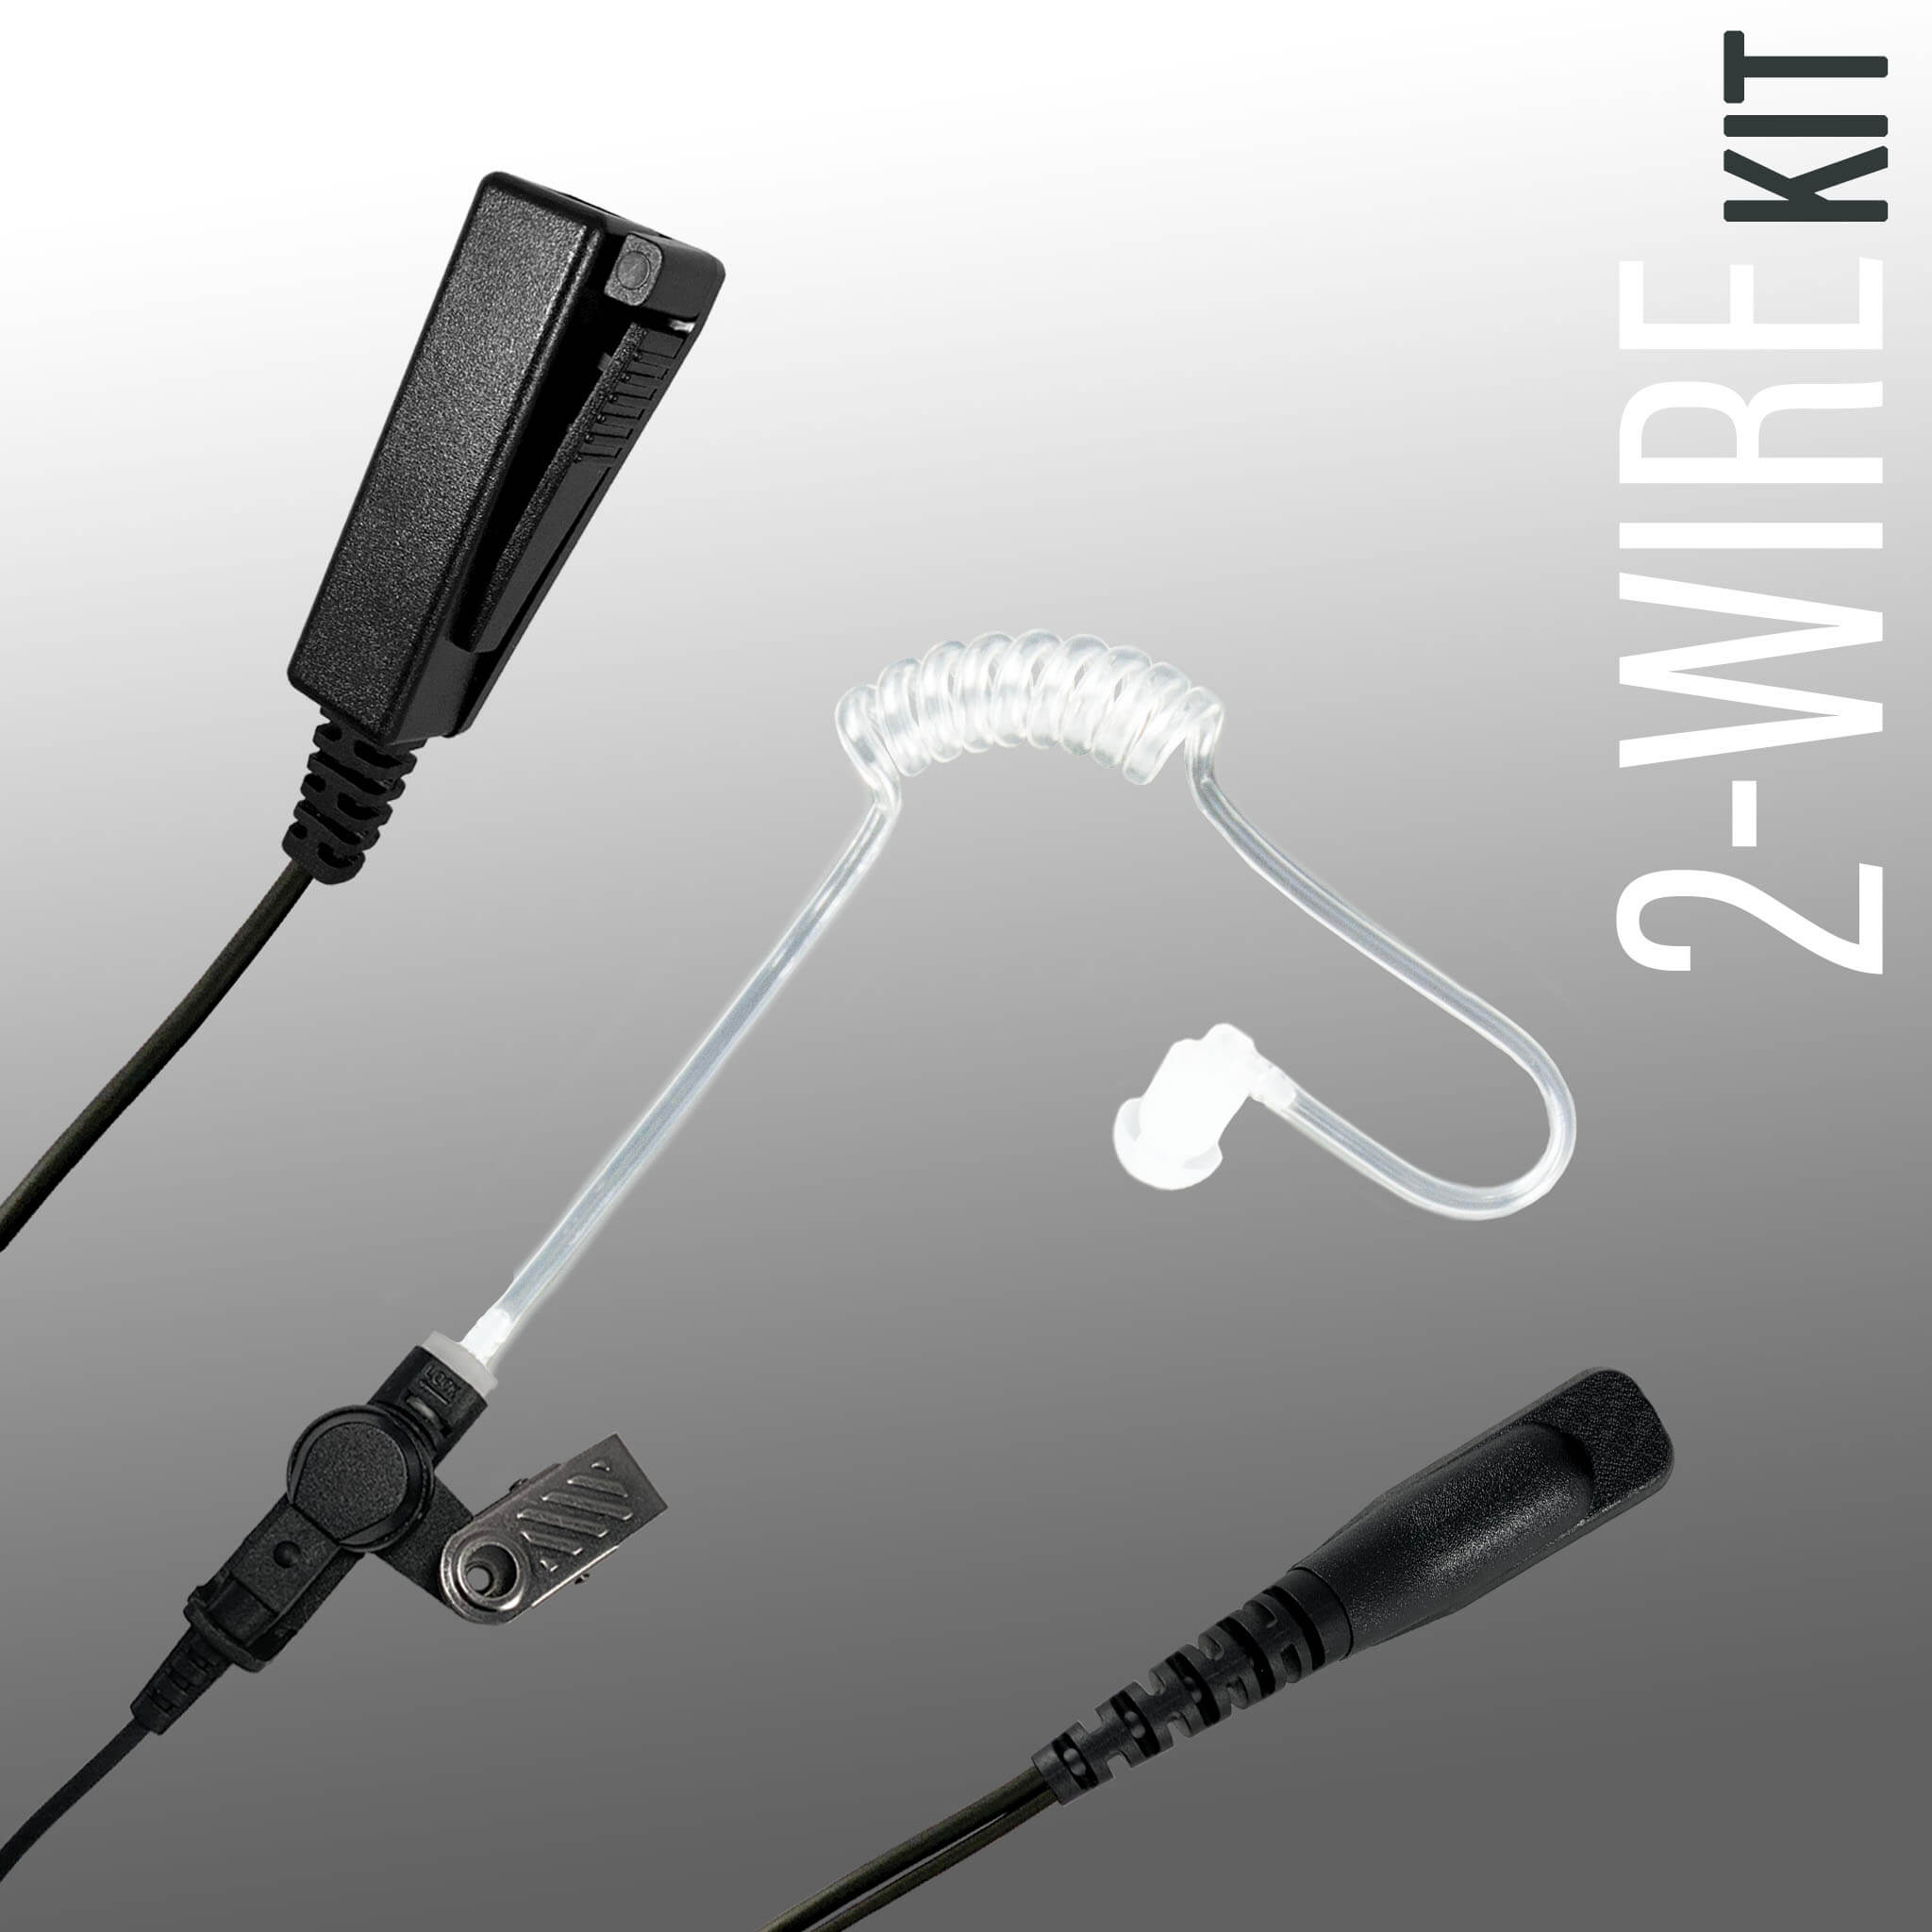 2 Wire Mic Kit: 2W23HW - Guaranteed to work w/: EF Johnson 51, 5000, 5100, 7700, 8100 Series, VP Viking Series 5000, 5100, 8100, 51SL ES, 51 Fire ES, 51SL ES, 51LT ES, 7700, Ascend Series, VP400, VP600, VP900 & More